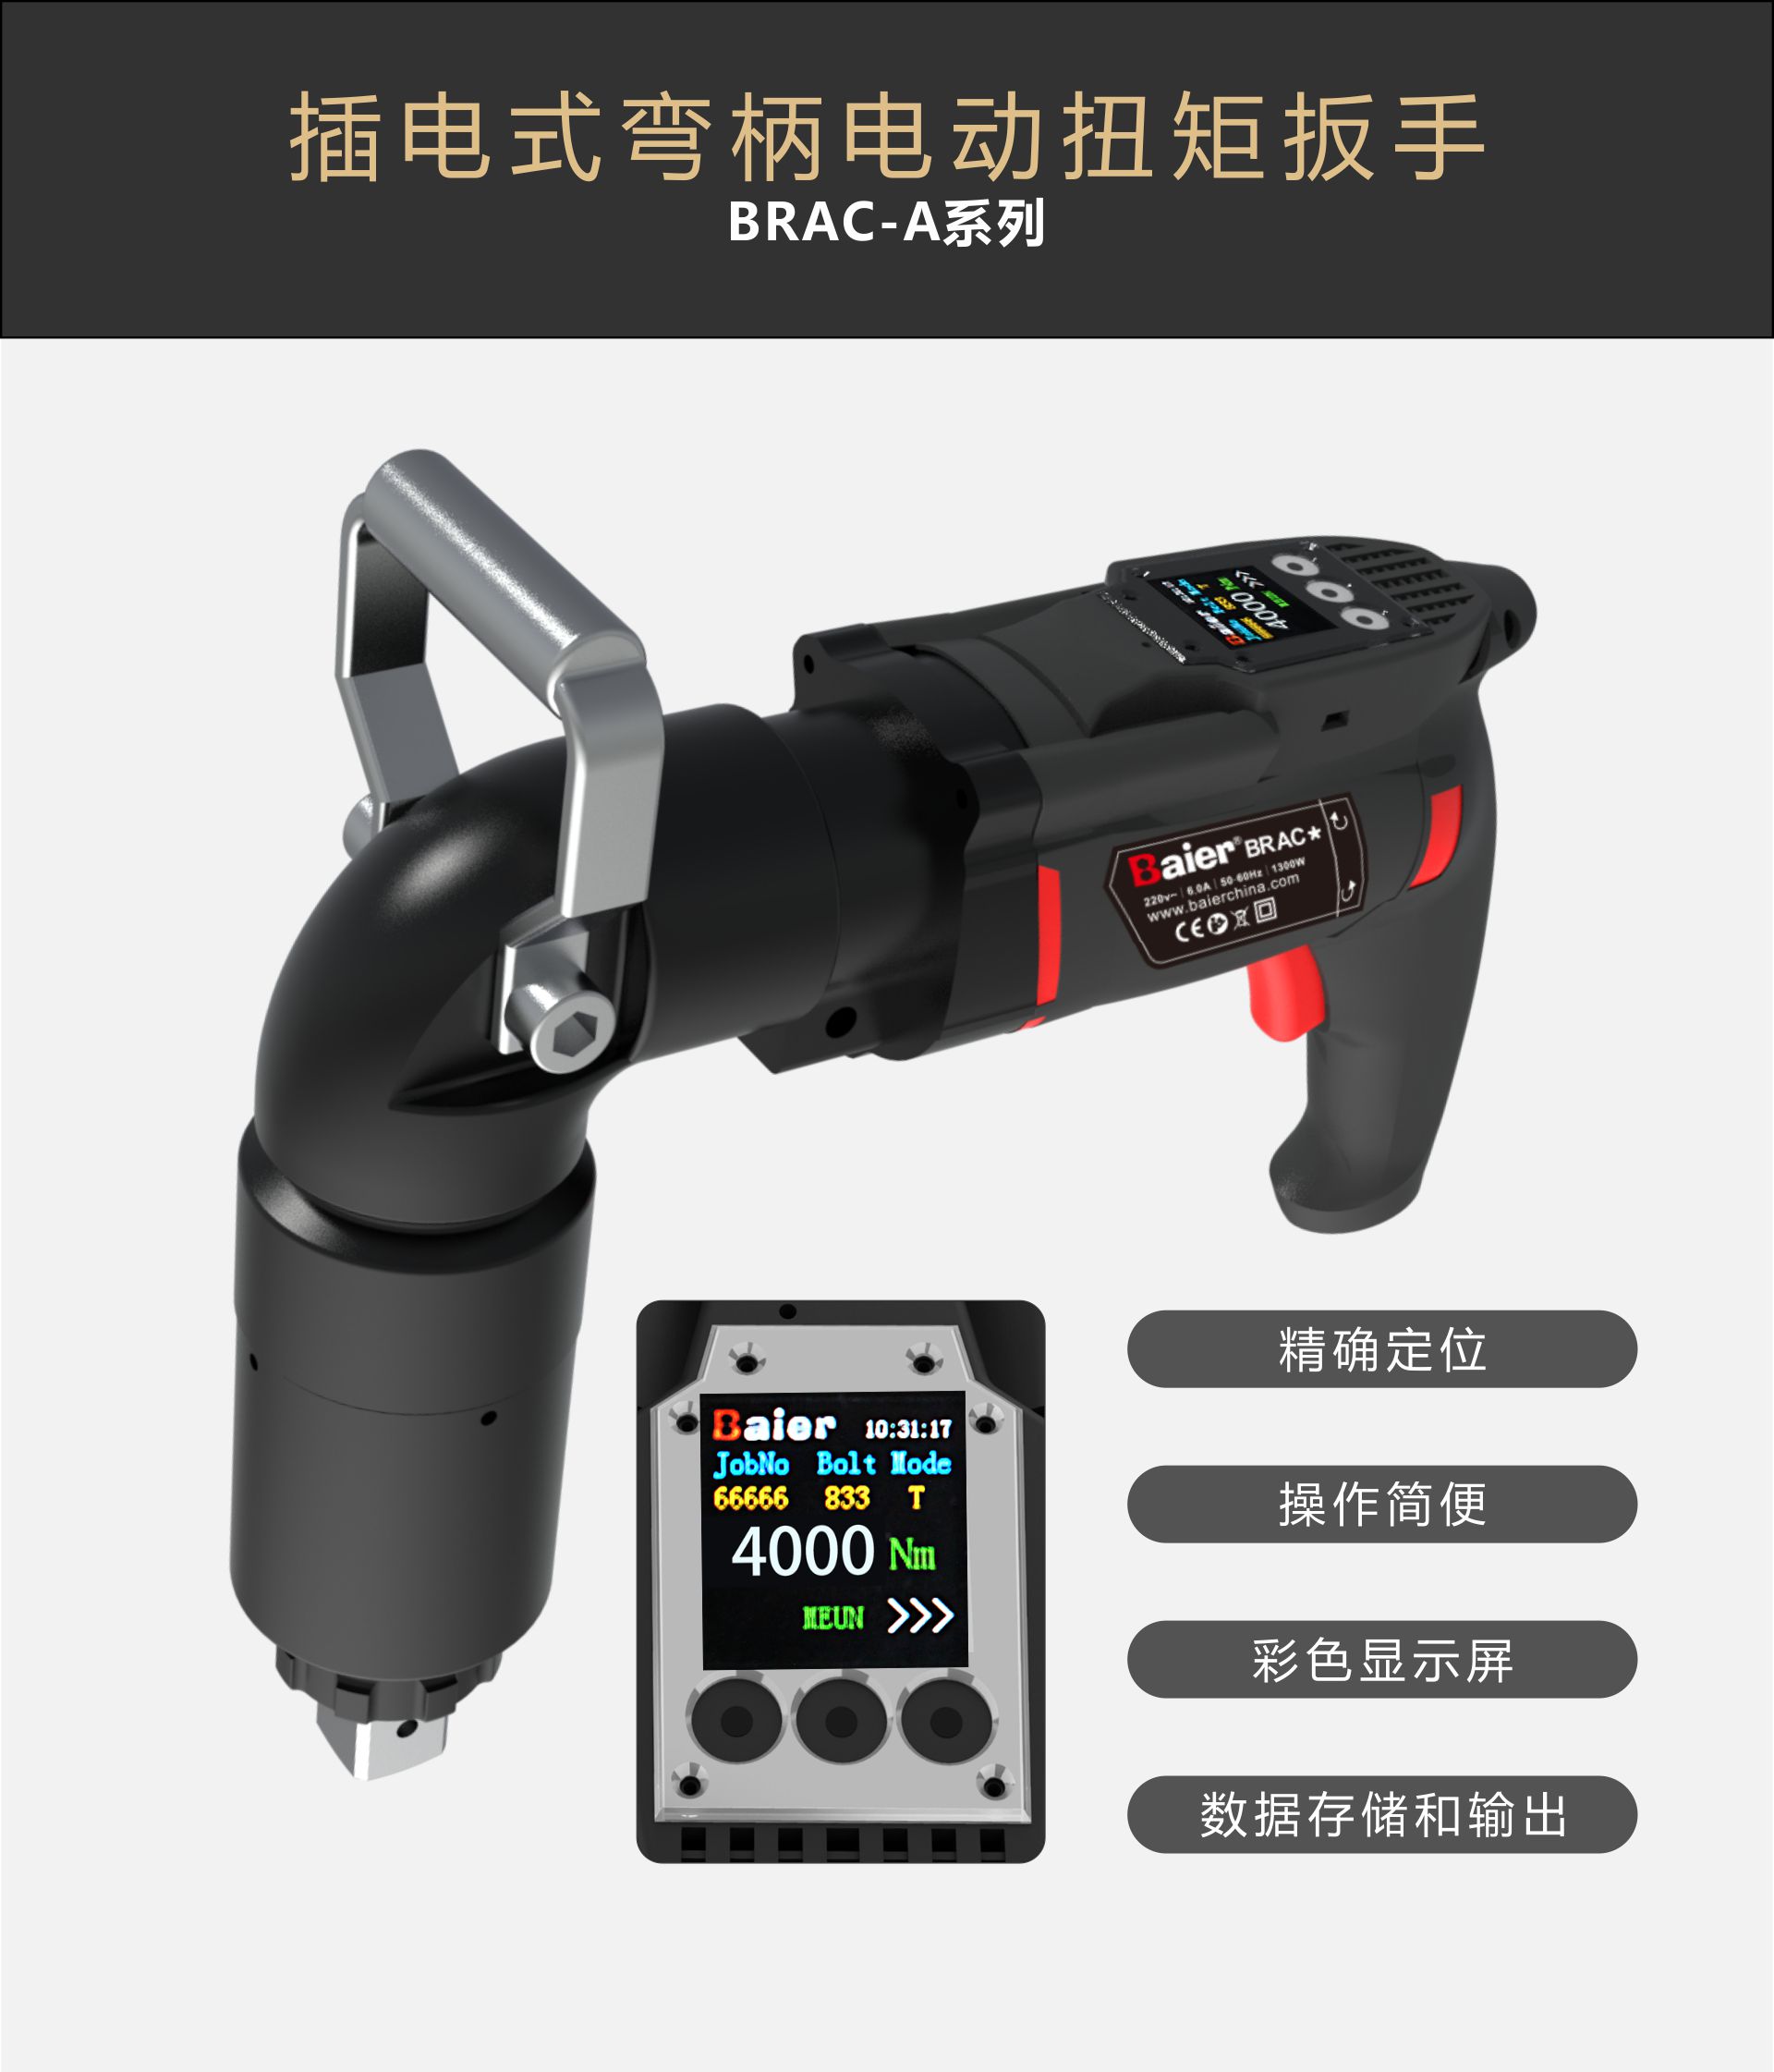 BRAC-A系列数显弯柄电动扭矩扳手